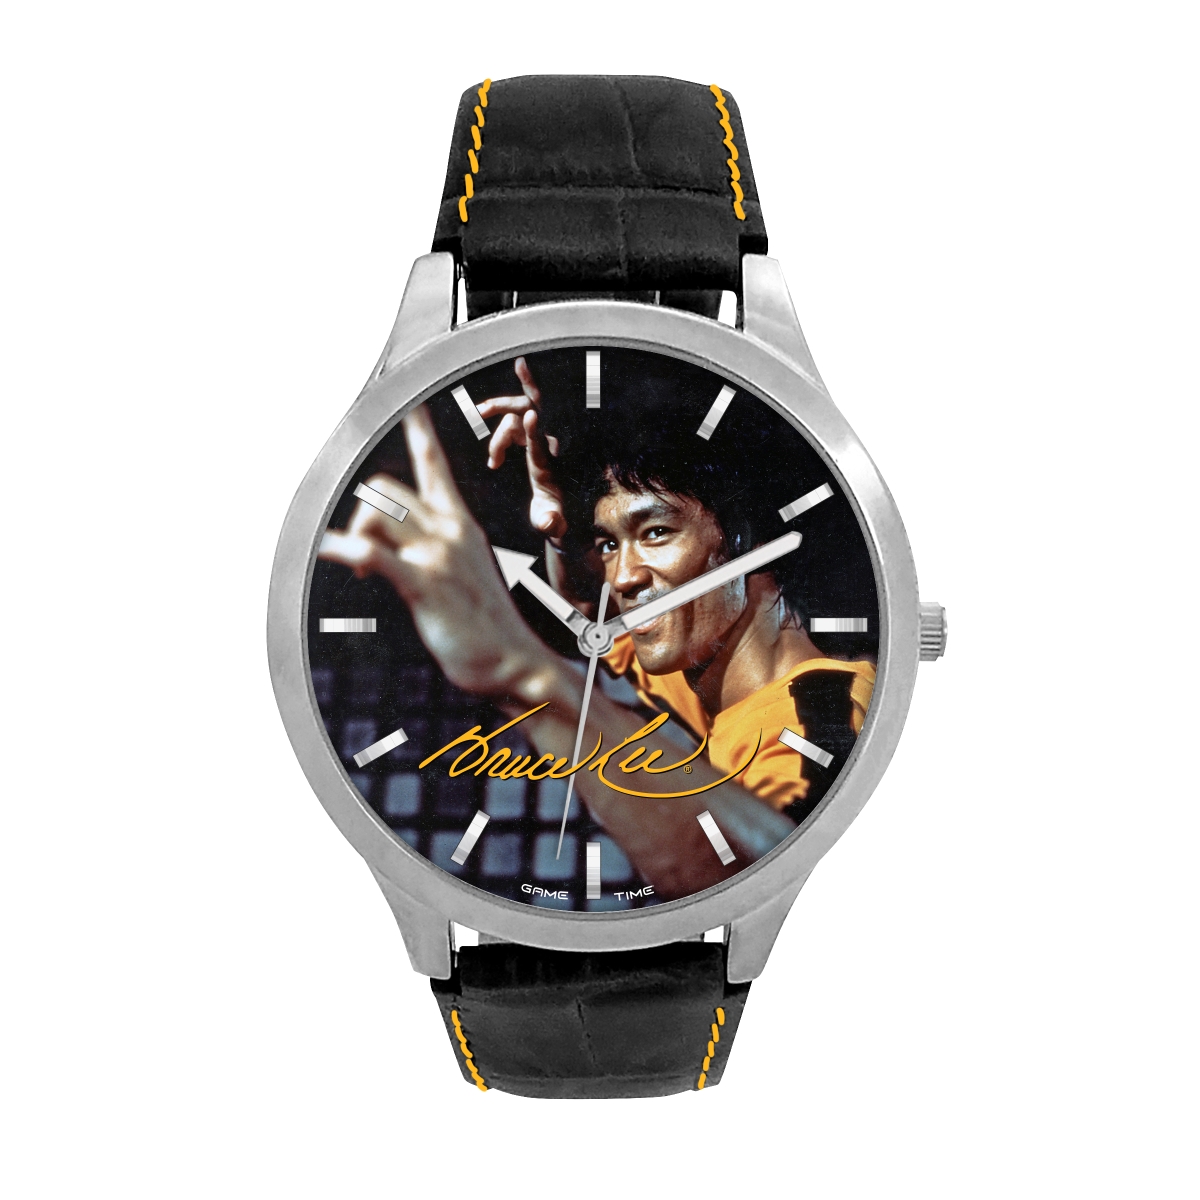 Gametime Blee-pik-fgt Black Series Bruce Lee Fight Stance Pioneer Watch